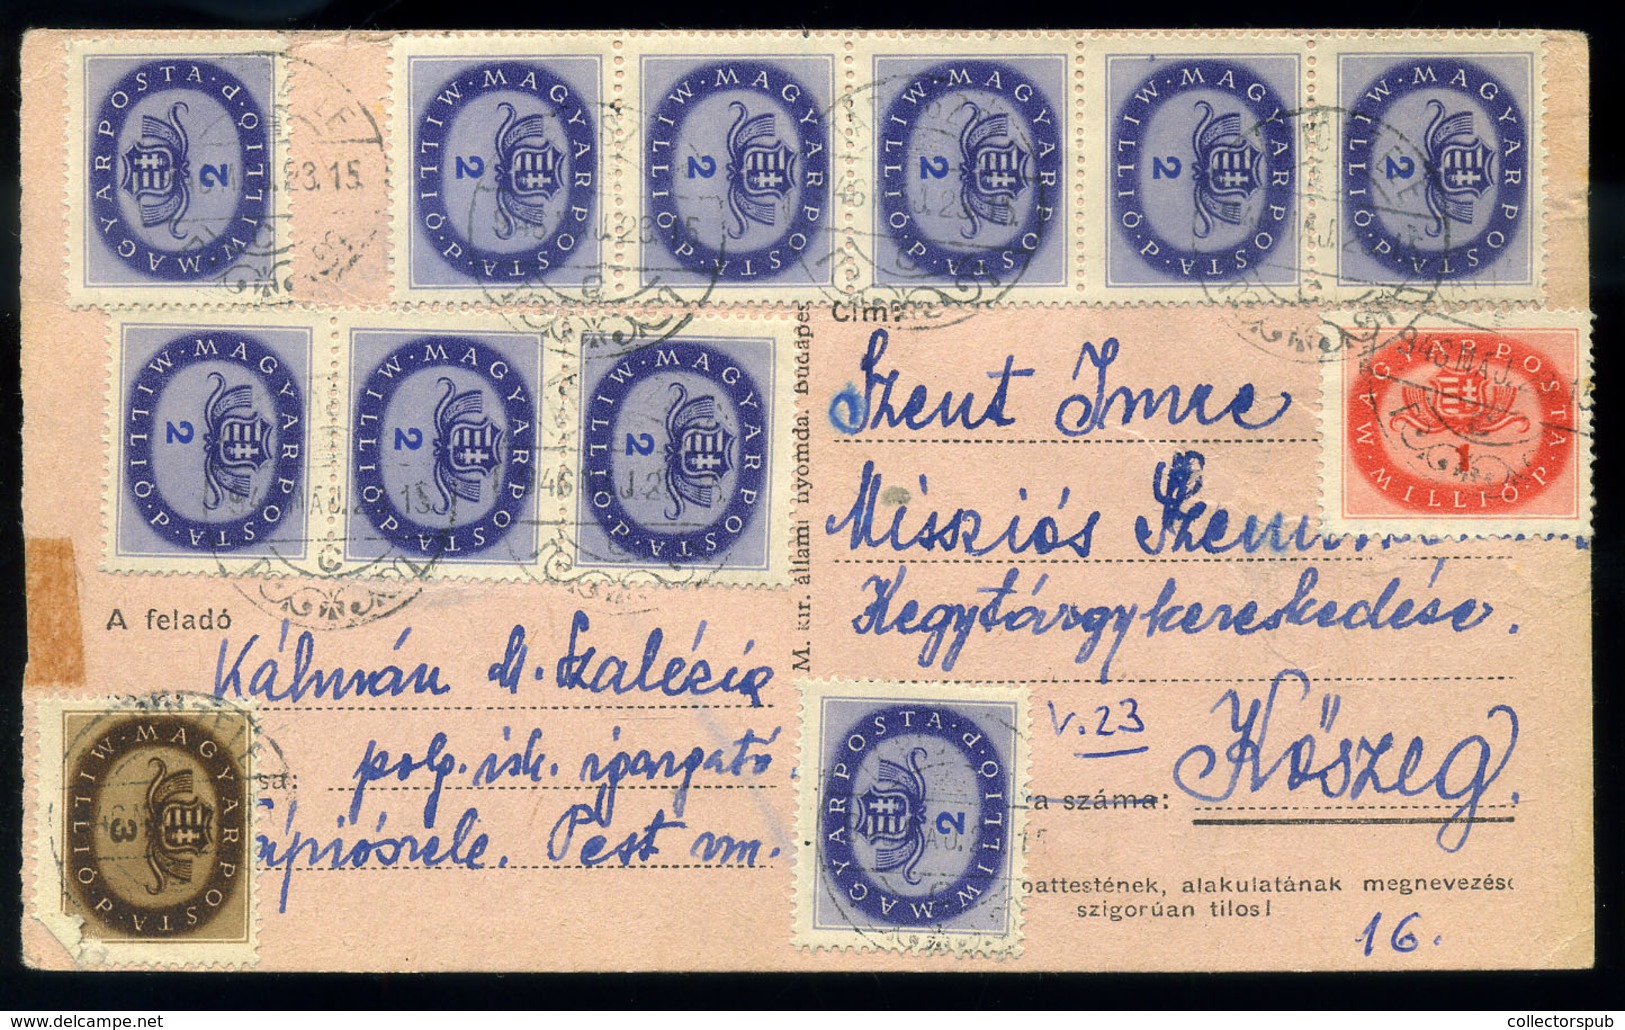 TÁPIÓSZELE 1946. Dekoratív Infla Levlap Kőszegre / Period16 Domestic Postcard 12 Stamps Tapioszele To Koszeg - Covers & Documents